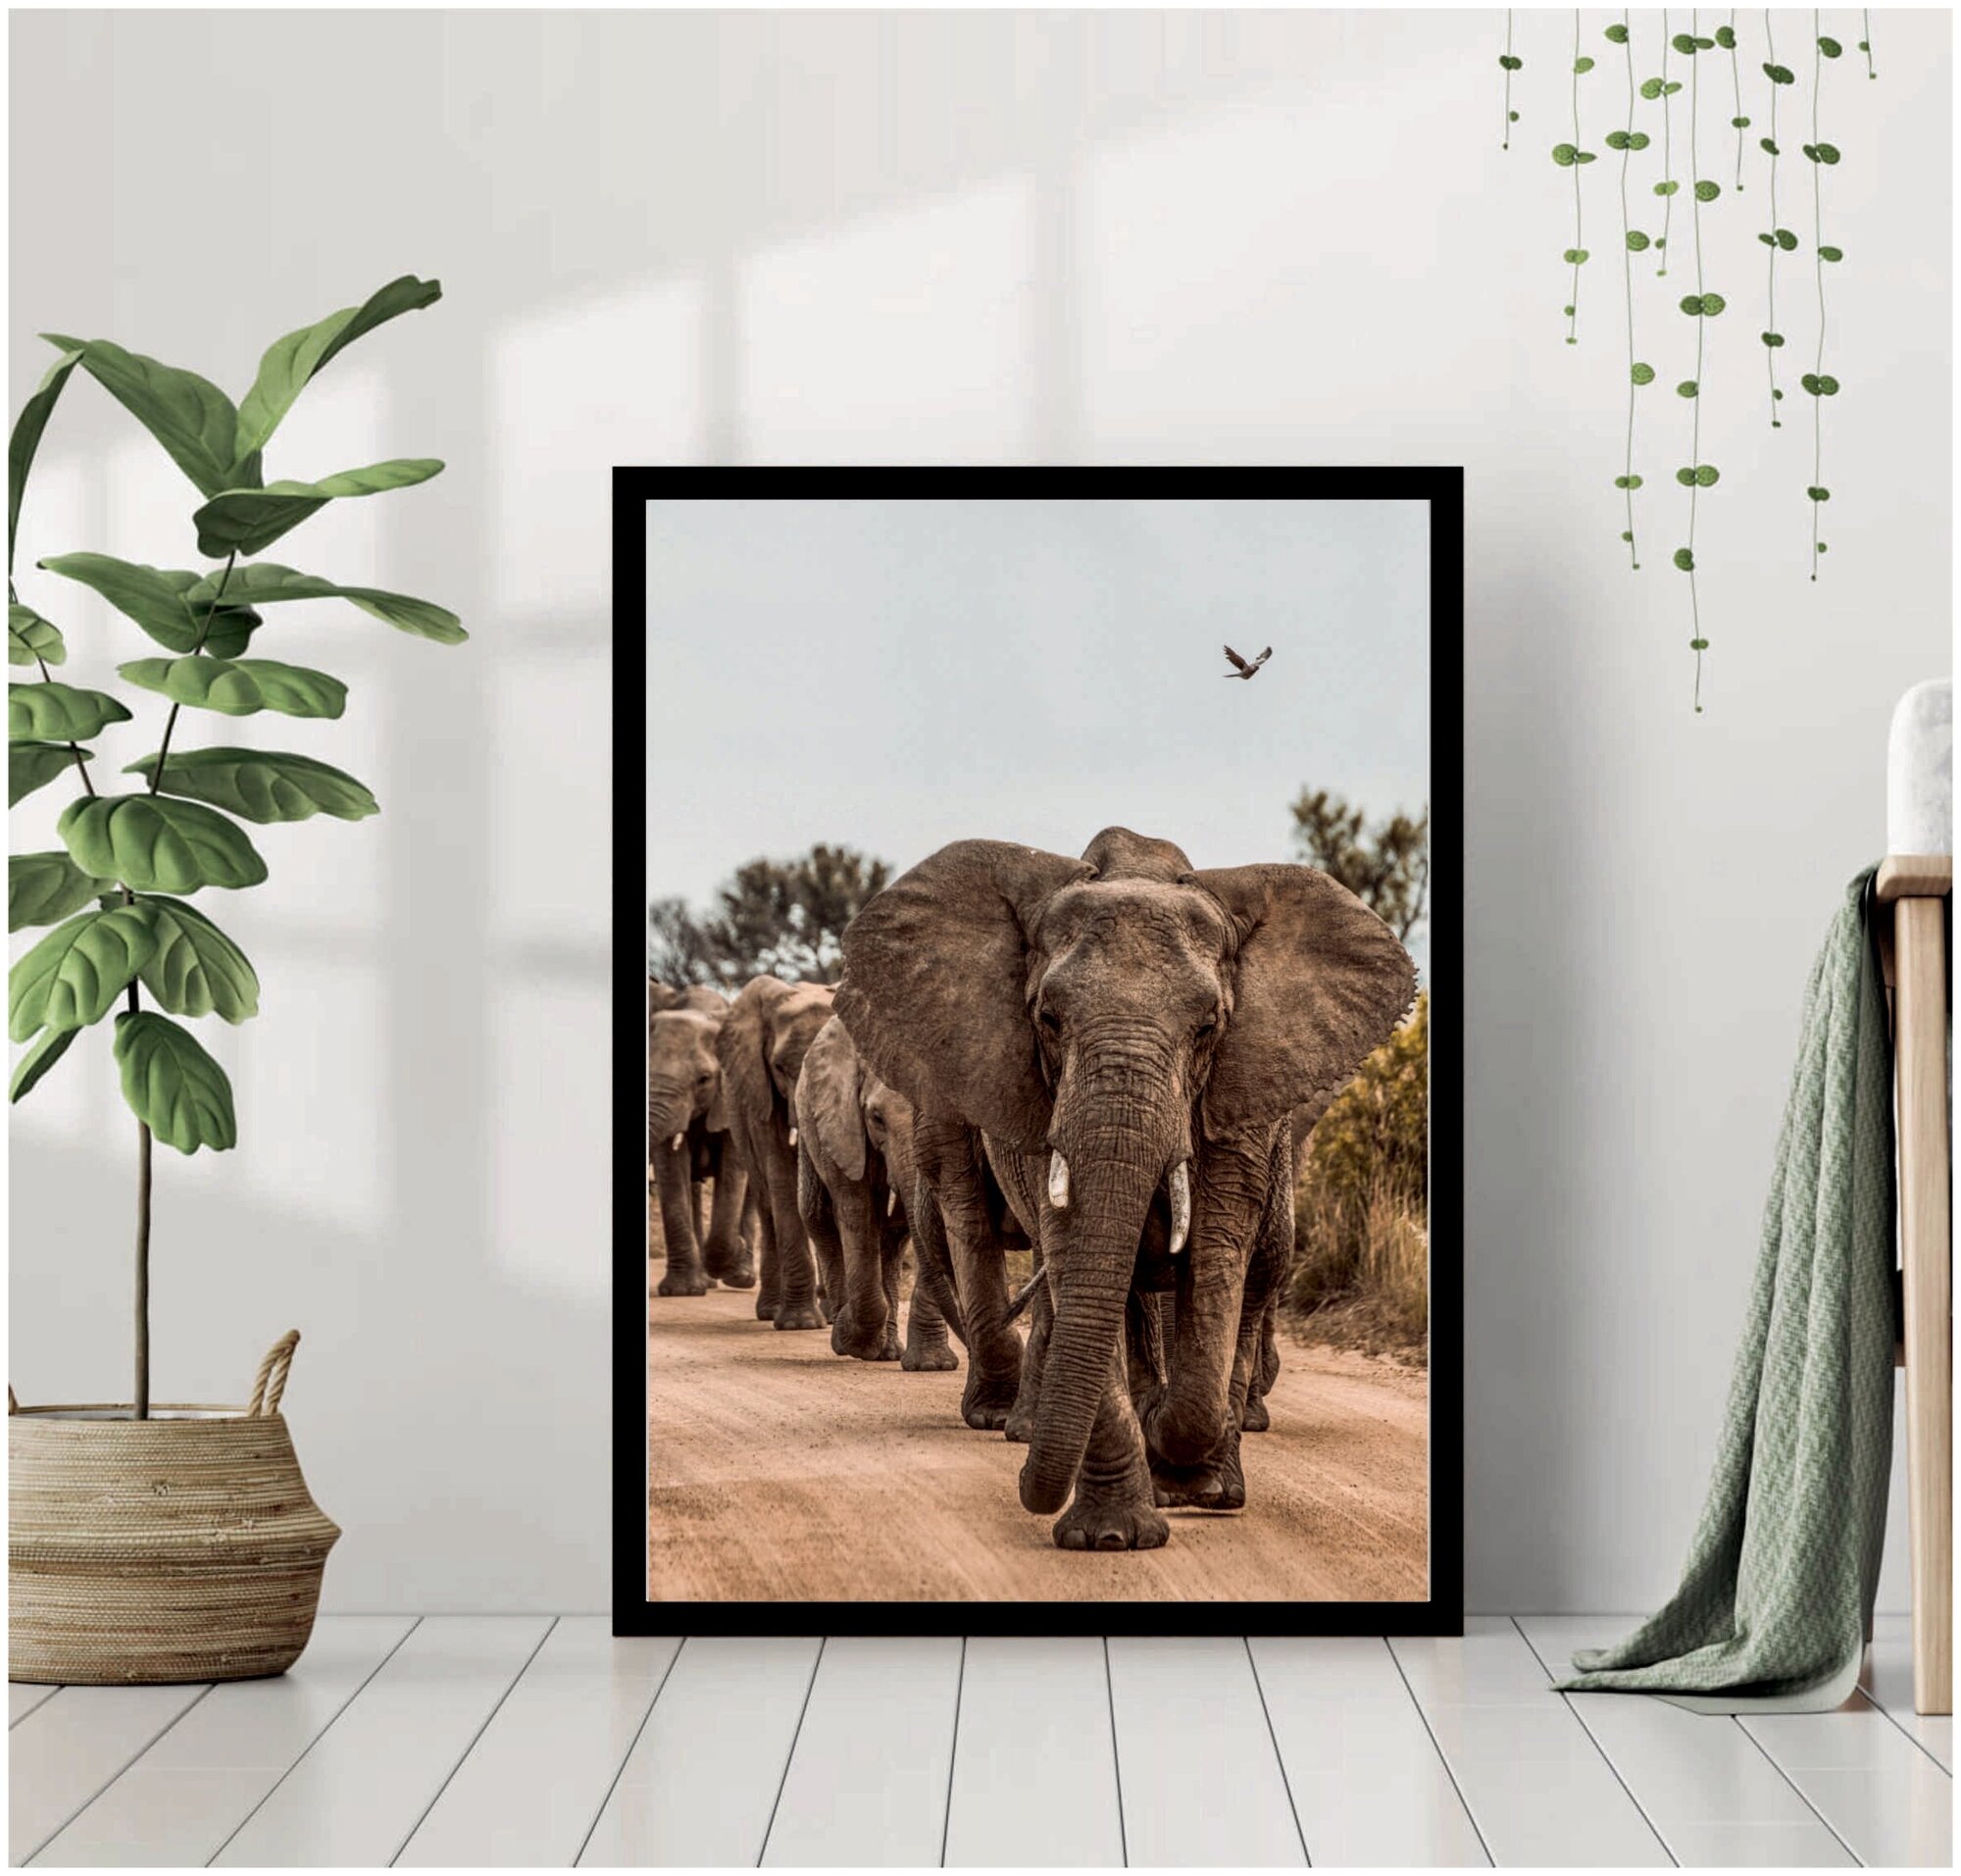 Постер В раме "Африканские слоны" 40 на 50 / Картина для интерьера / Плакат / Постер на стену / Интерьерные картины в черной рамке